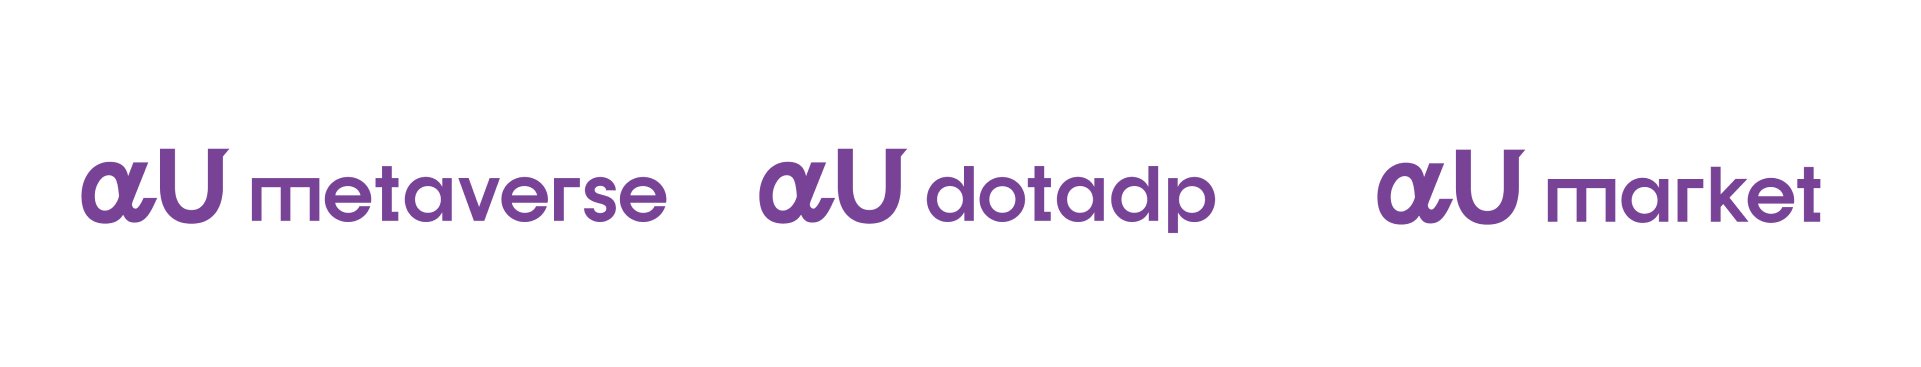 「αU metaverse」「αU dotadp」「αU market」